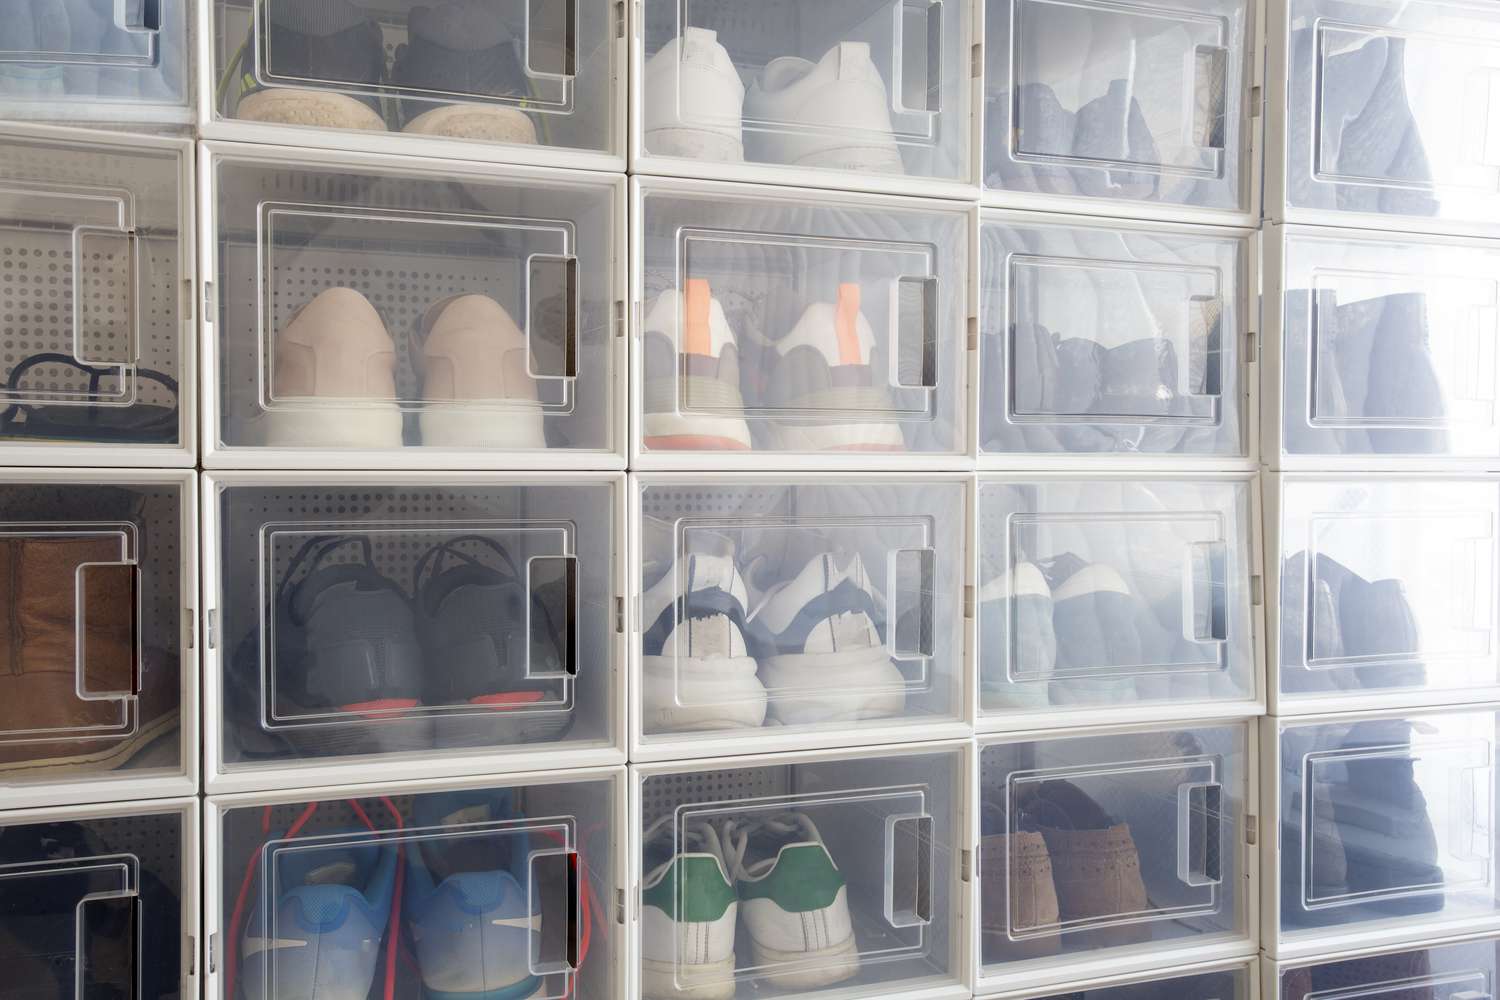 Schuhe aufbewahrt in Kunststoff-Schuhkartons mit durchsichtigen Fronten